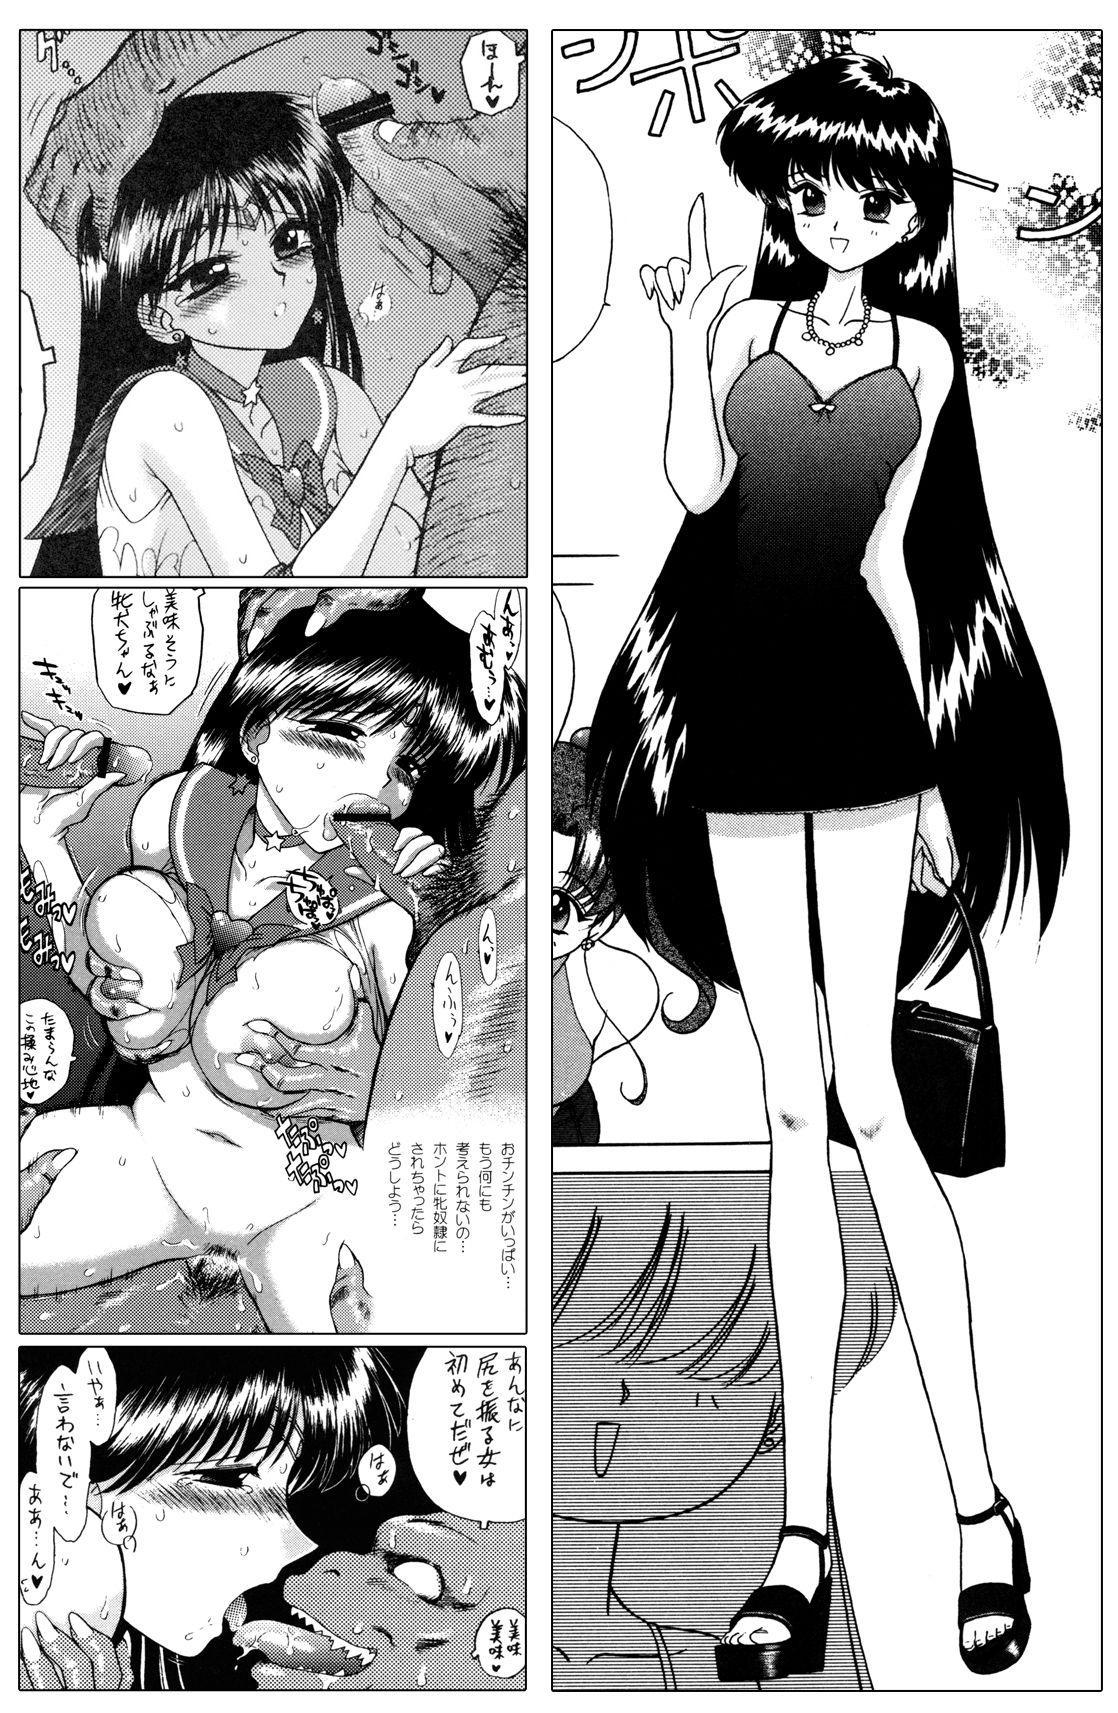 Gay Public QUEEN OF SPADES - 黑桃皇后 - Sailor moon Publico - Page 12